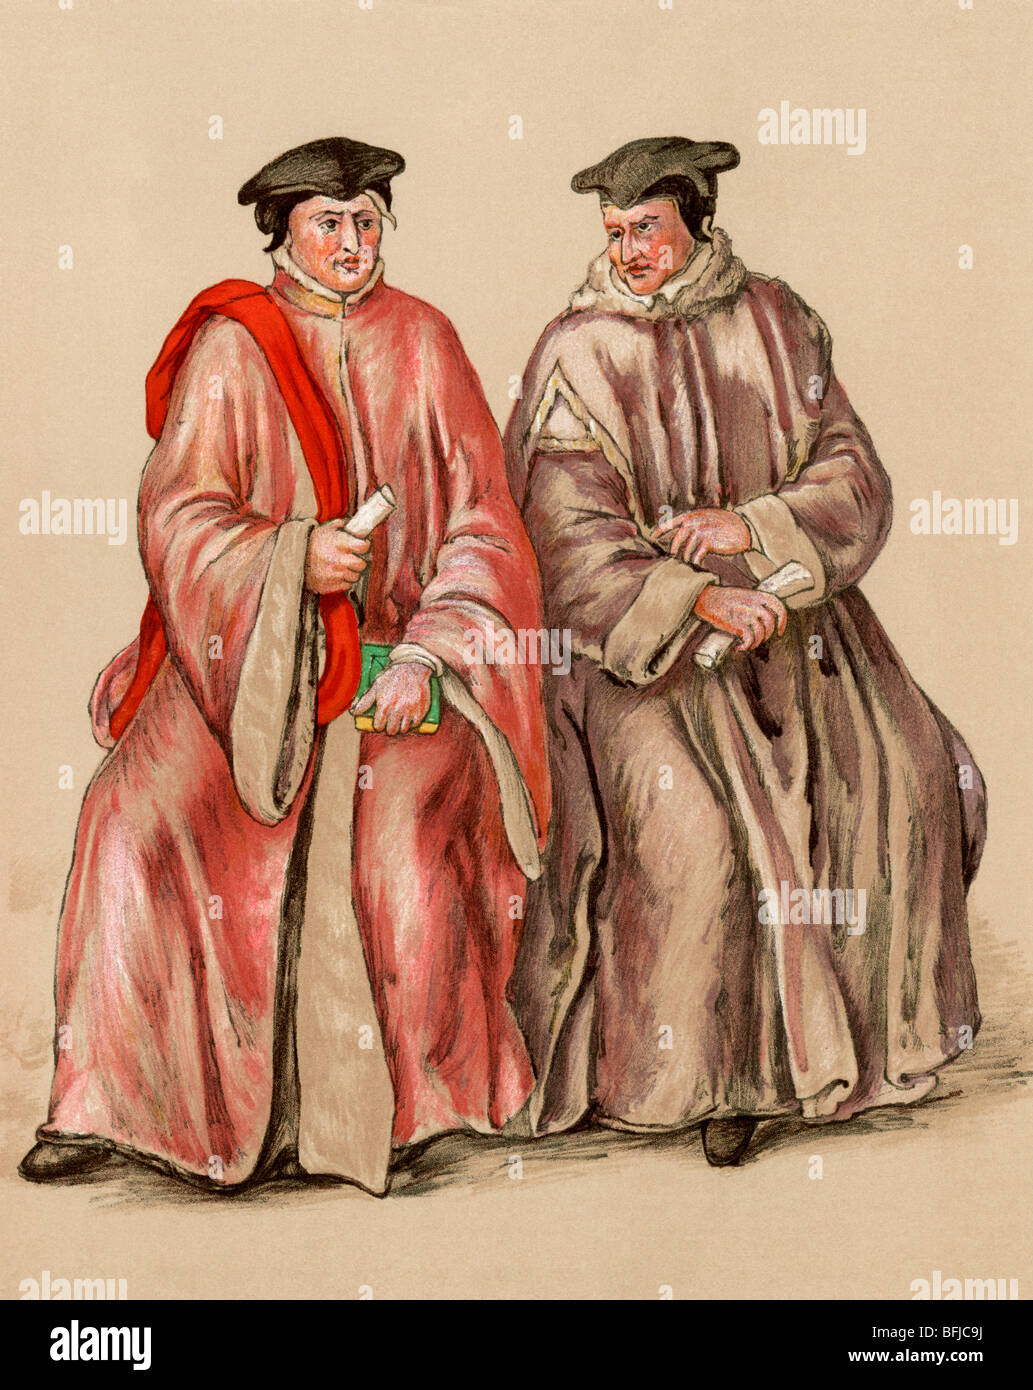 Les juges anglais dans leurs robes pendant le règne d'Elizabeth, années 1500. Lithographie couleur Banque D'Images